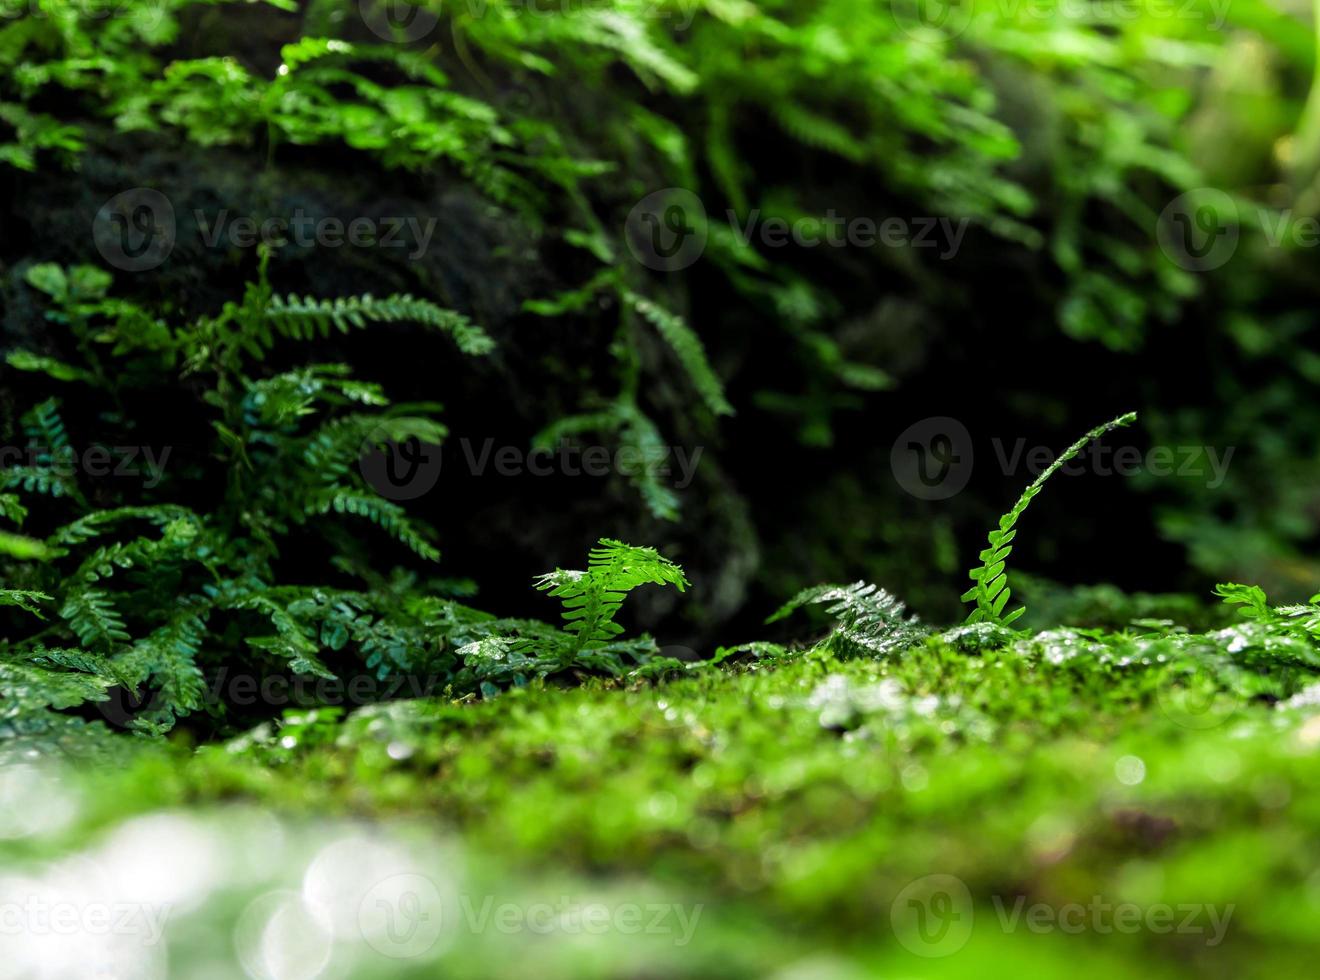 versheid kleine varenbladeren met mos en algen in de tropische tuin foto